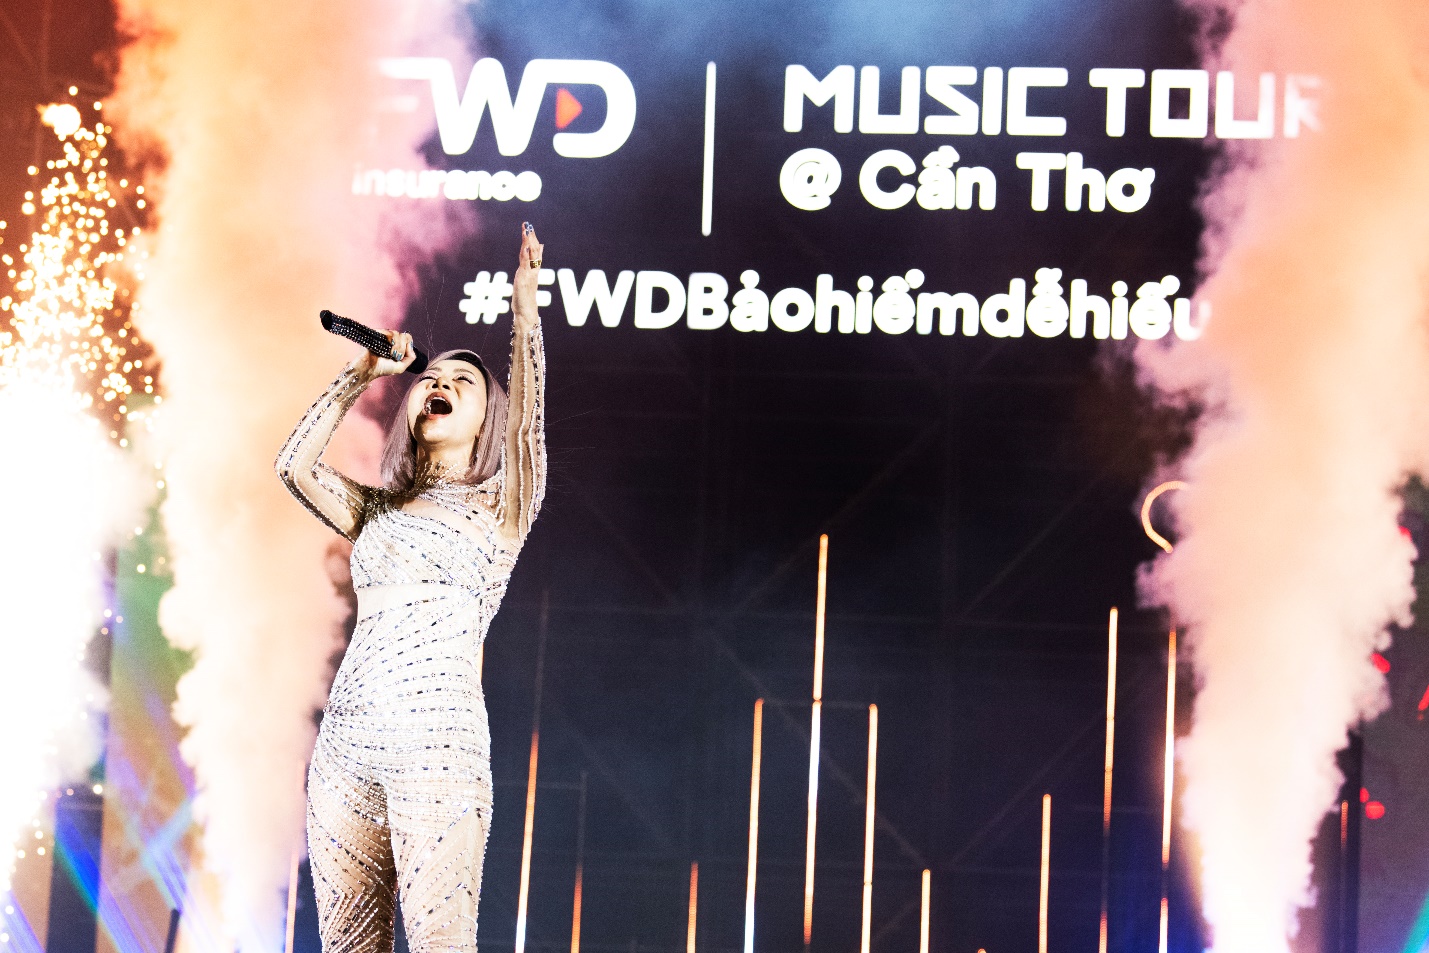 FWD Music Tour bùng nổ với hơn 23 triệu lượt xem trên nền tảng TikTok - Ảnh 1.